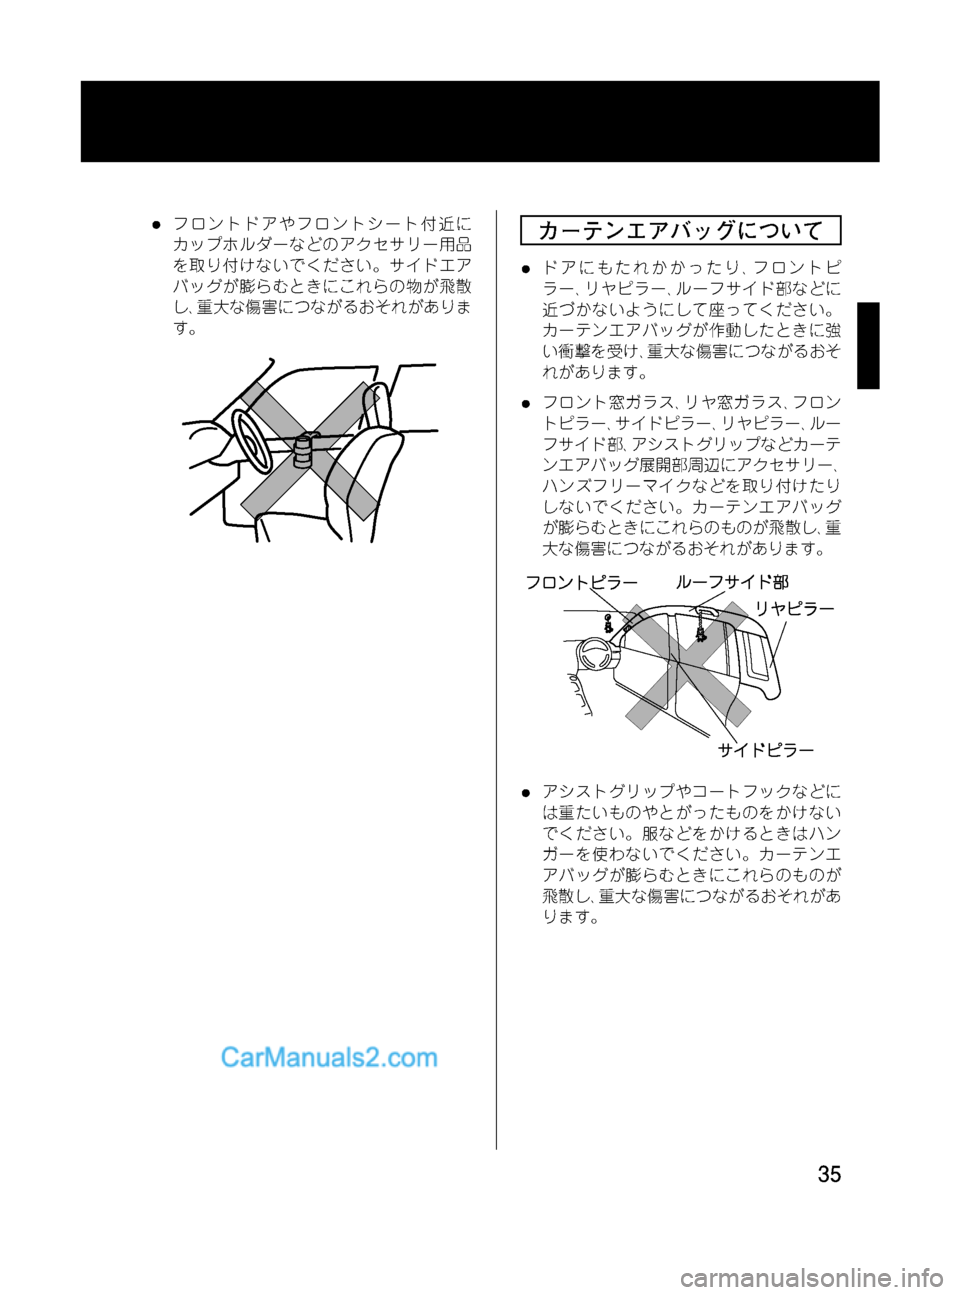 MAZDA MODEL VERISA 2007  ベリーサ｜取扱説明書 (in Japanese) Black plate (35,1)
lフロントドアやフロントシート付近に
カップホルダーなどのアクセサリー用品
を取り付けないでください。サイドエア
バッグが膨ら